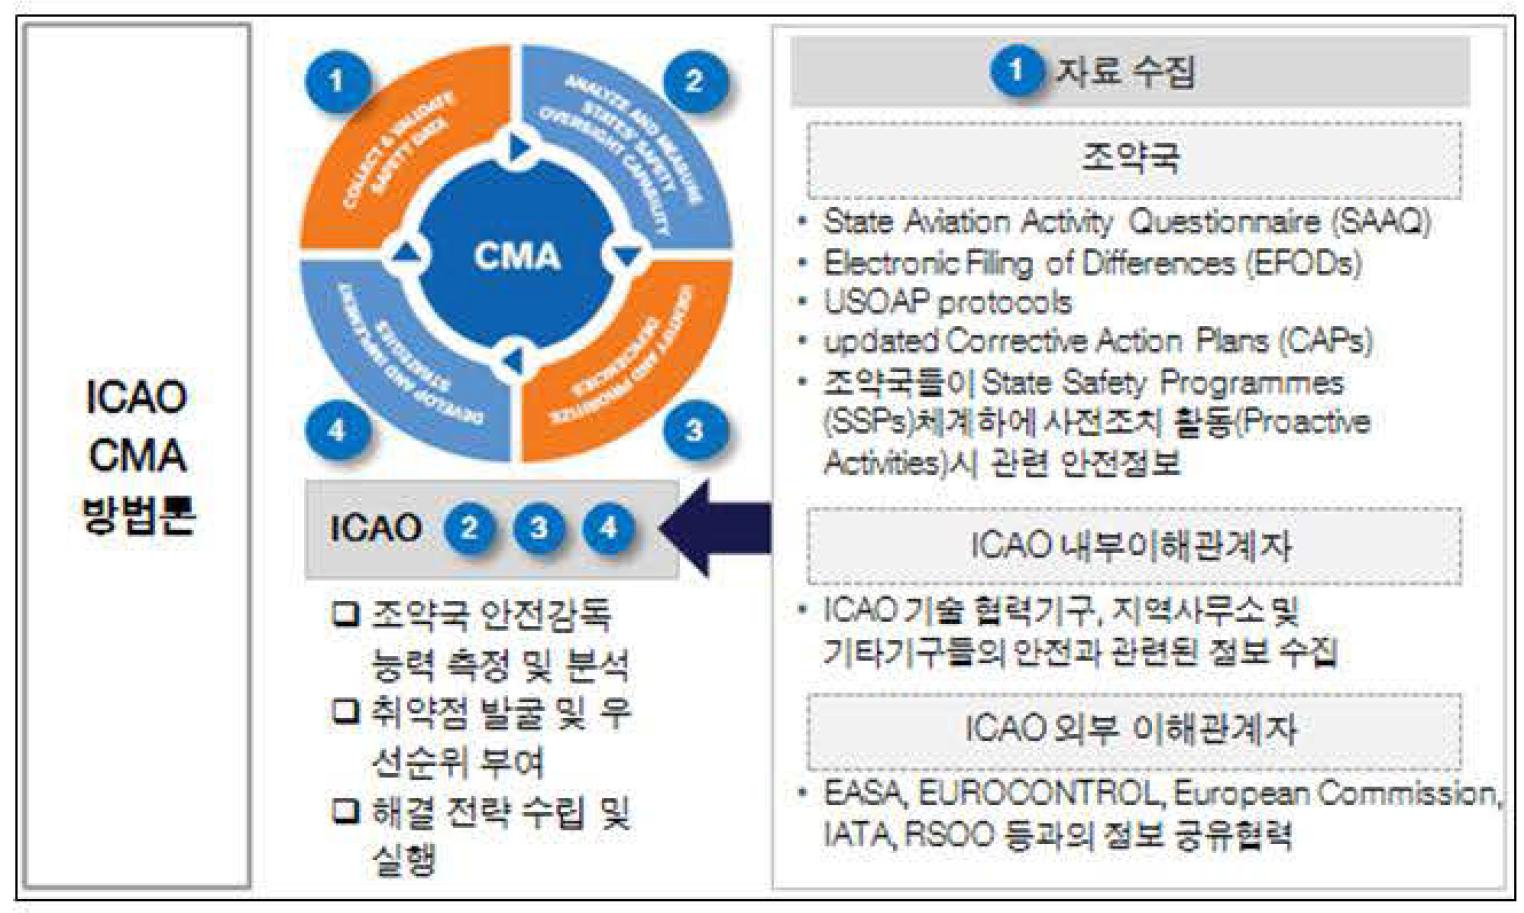 ICAO CMA 방법론